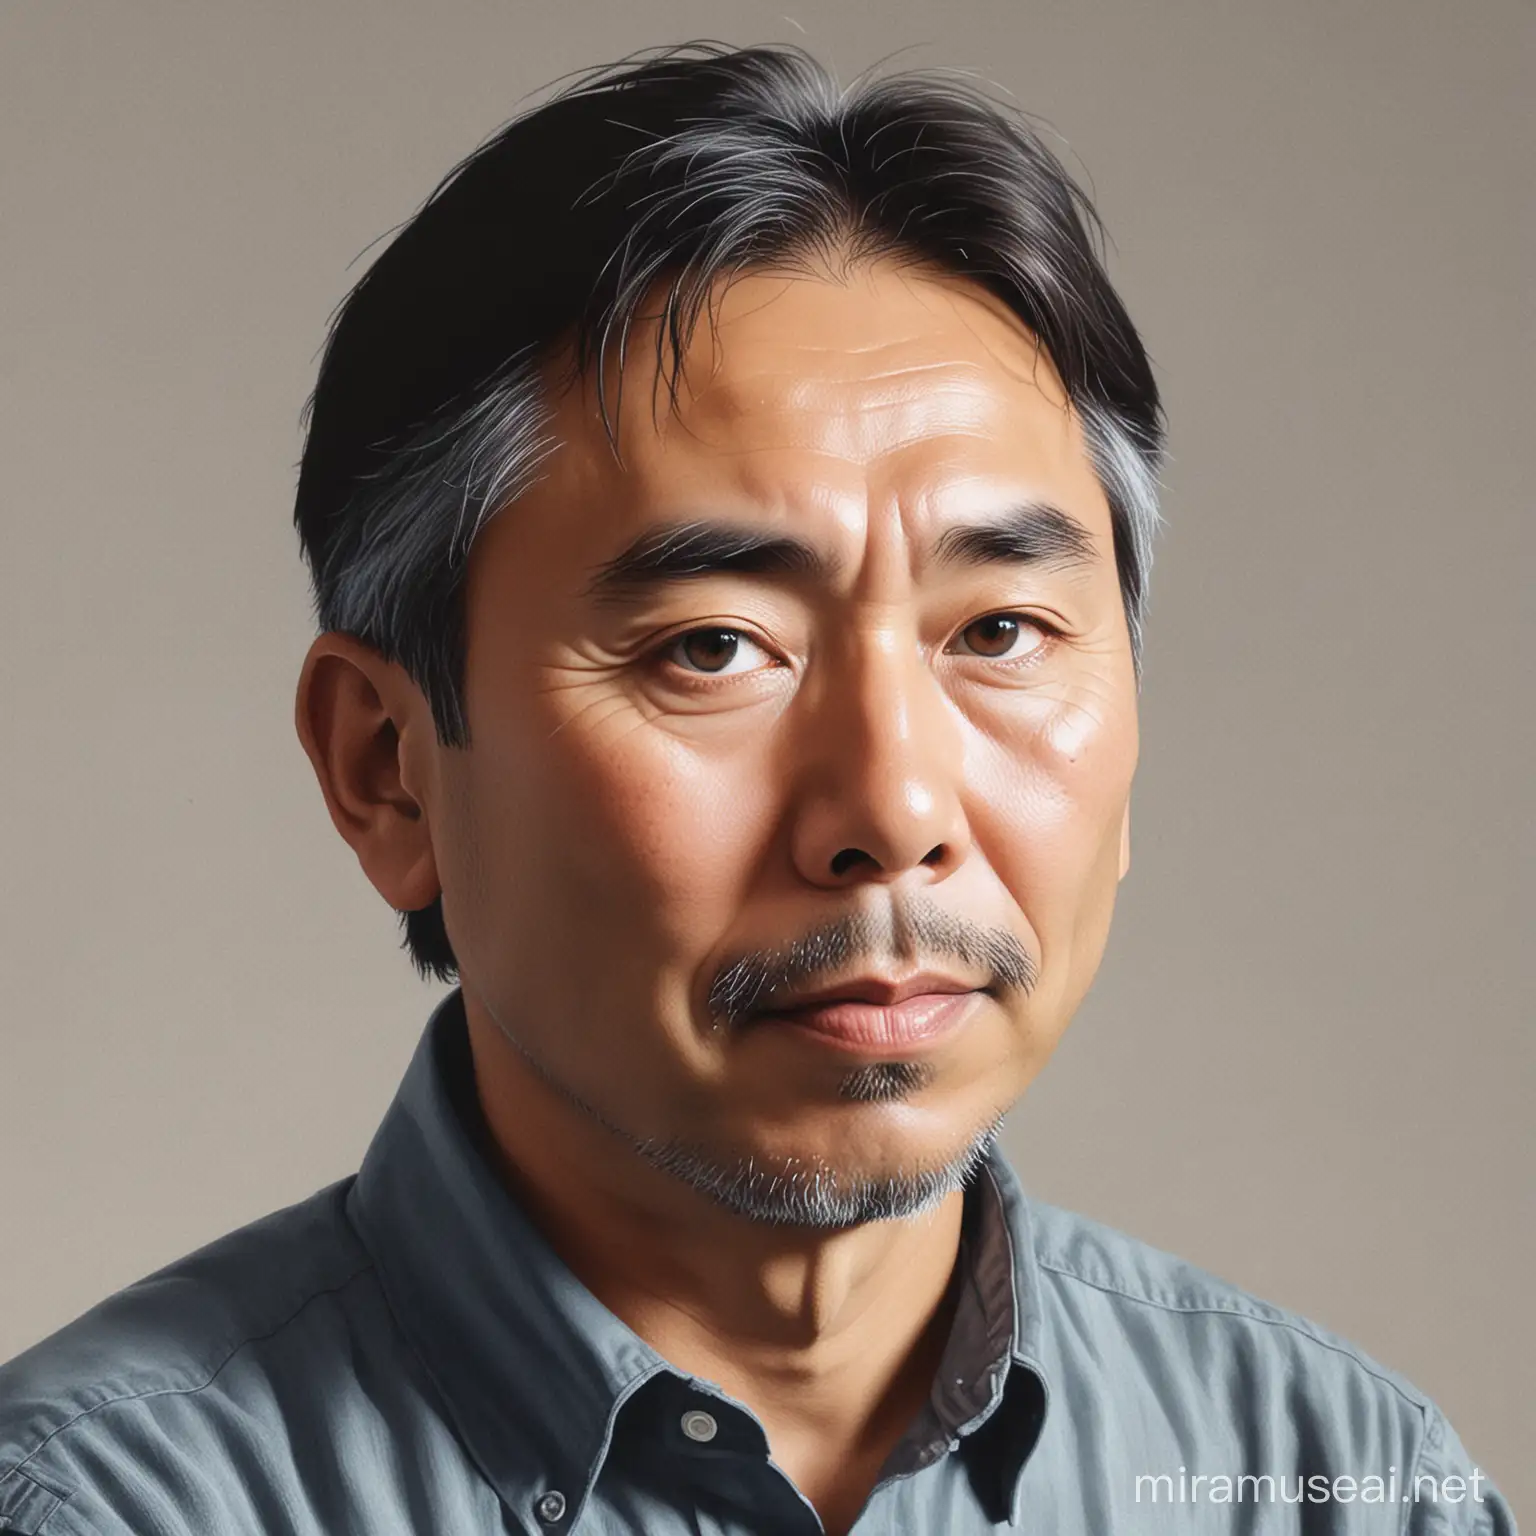 Haruki Murakami Inspired Literary Art